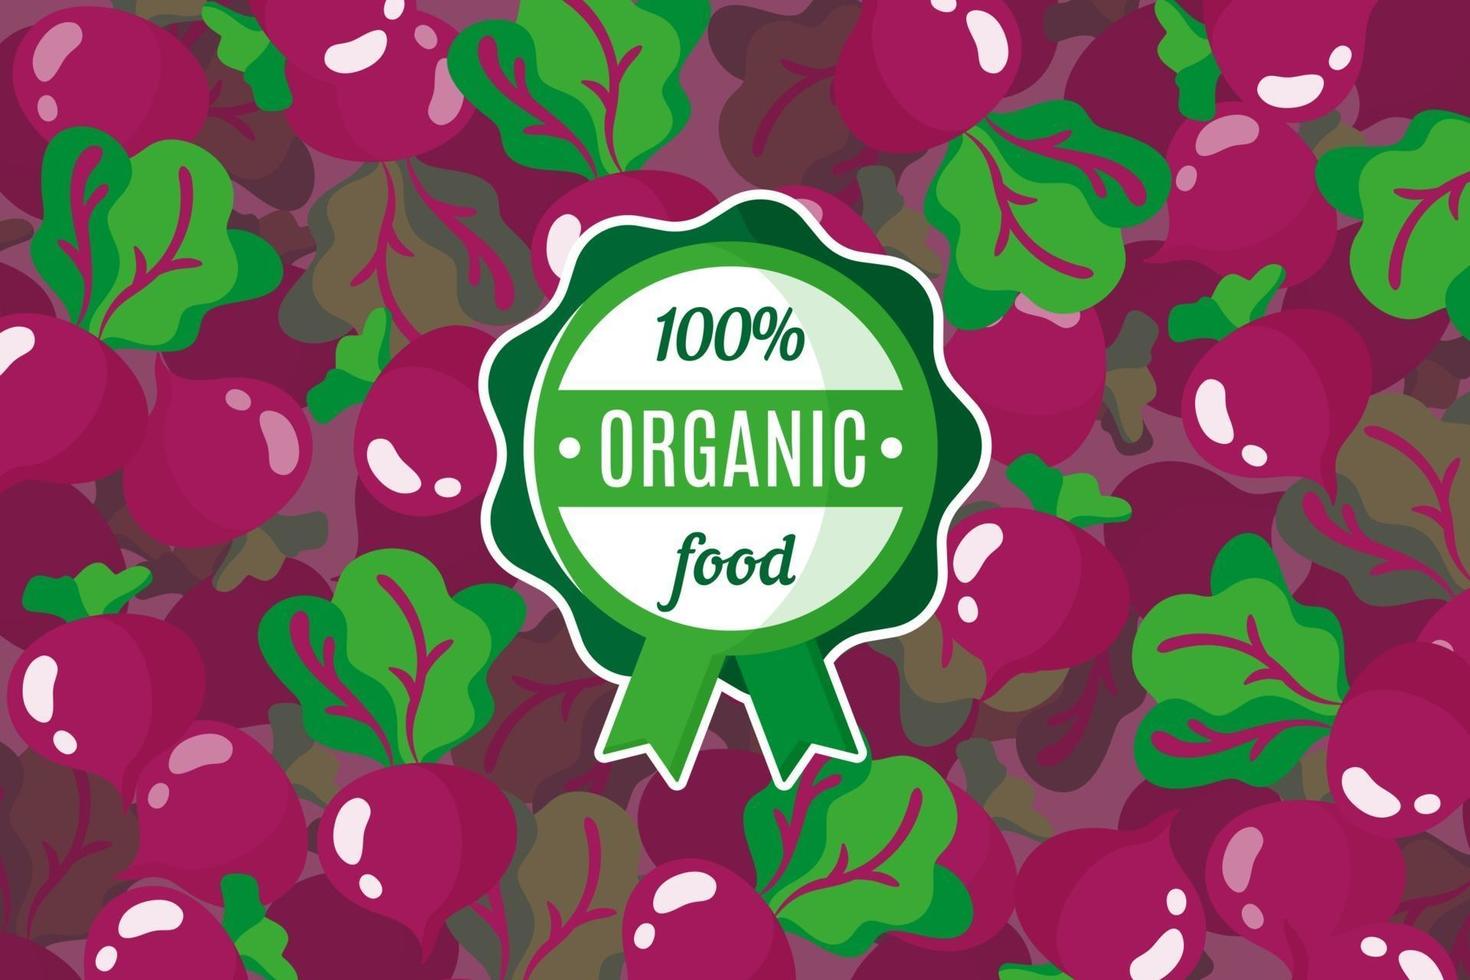 affiche de vecteur ou une bannière avec illustration de fond de betterave rouge et étiquette de nourriture biologique verte ronde